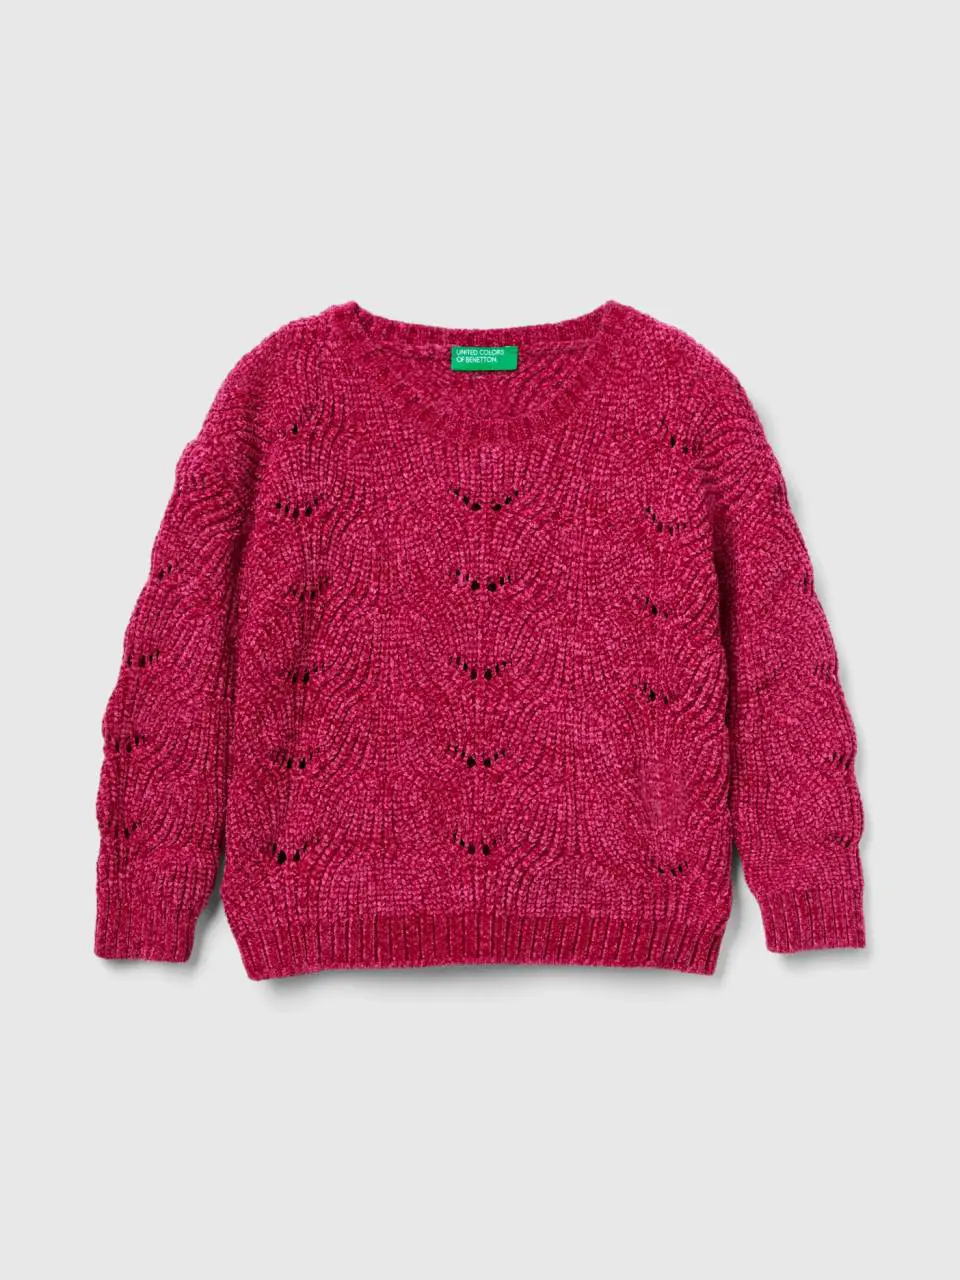 Benetton knit chenille sweater. 1